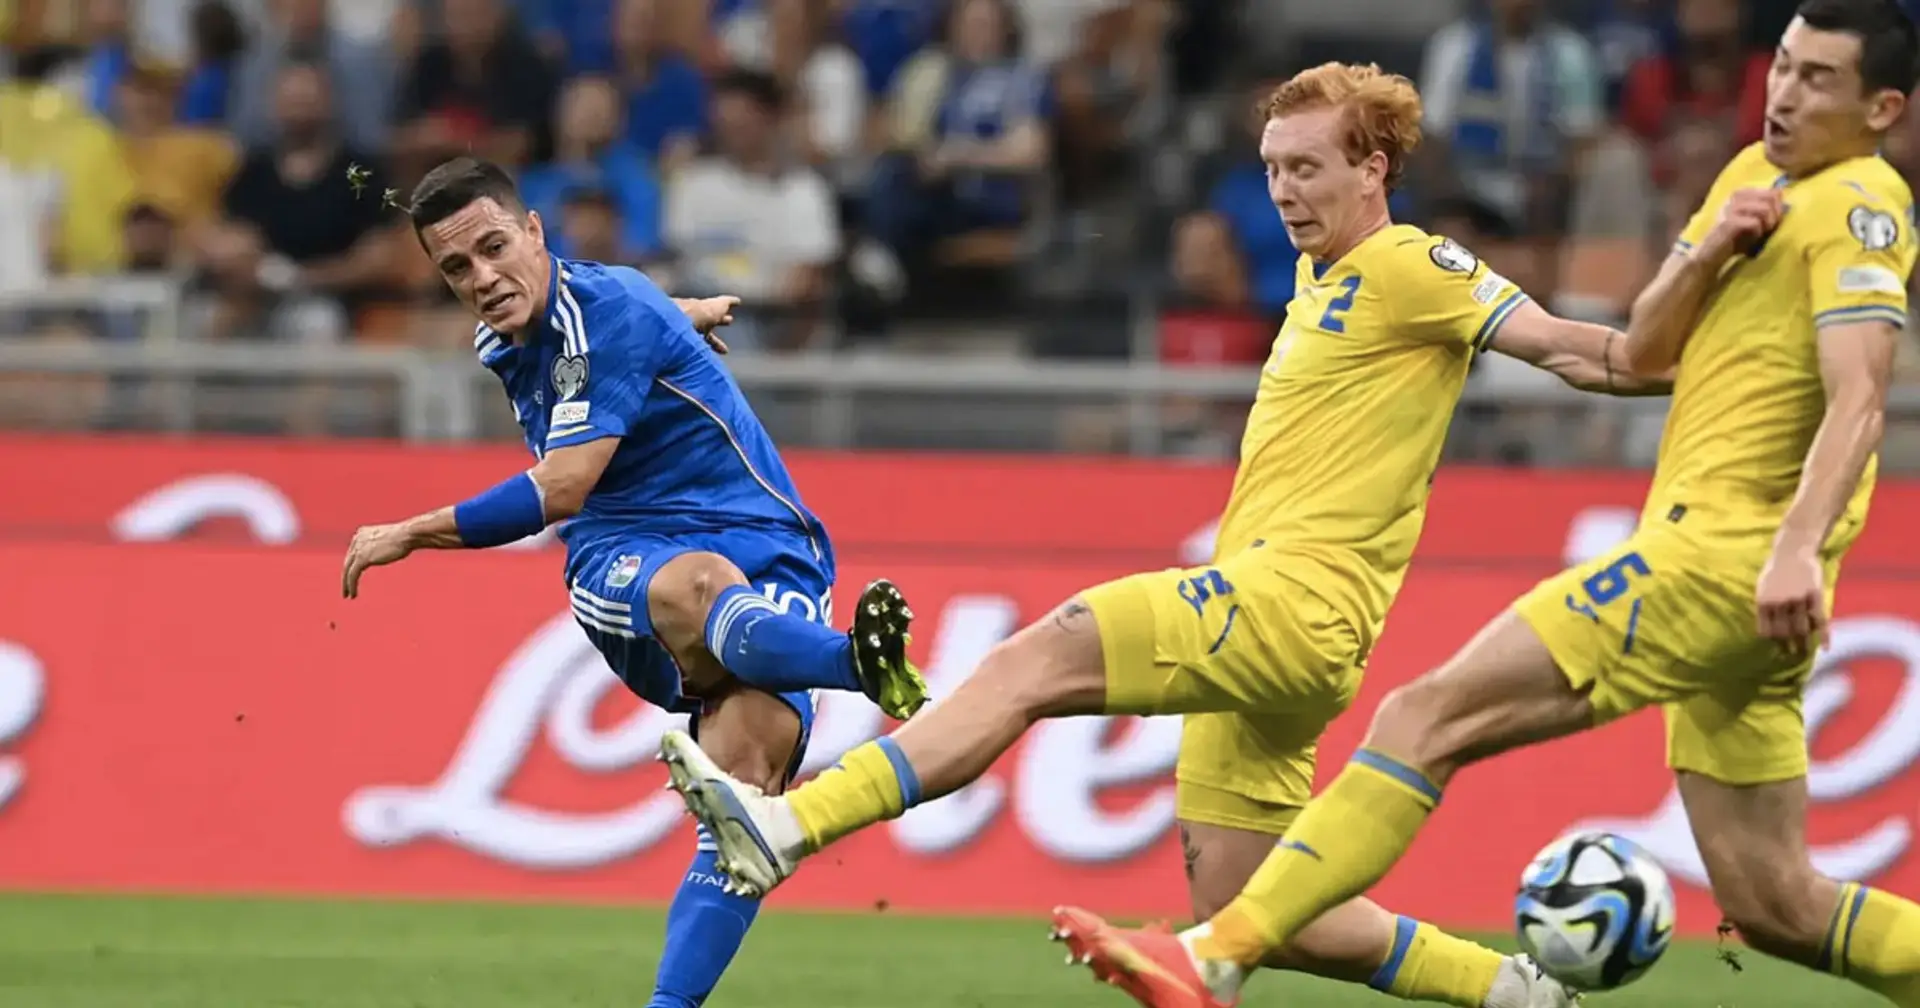 "Nos adversaires vont certainement continuer" : ce que disent les médias italiens à propos du match Ukraine-Italie 